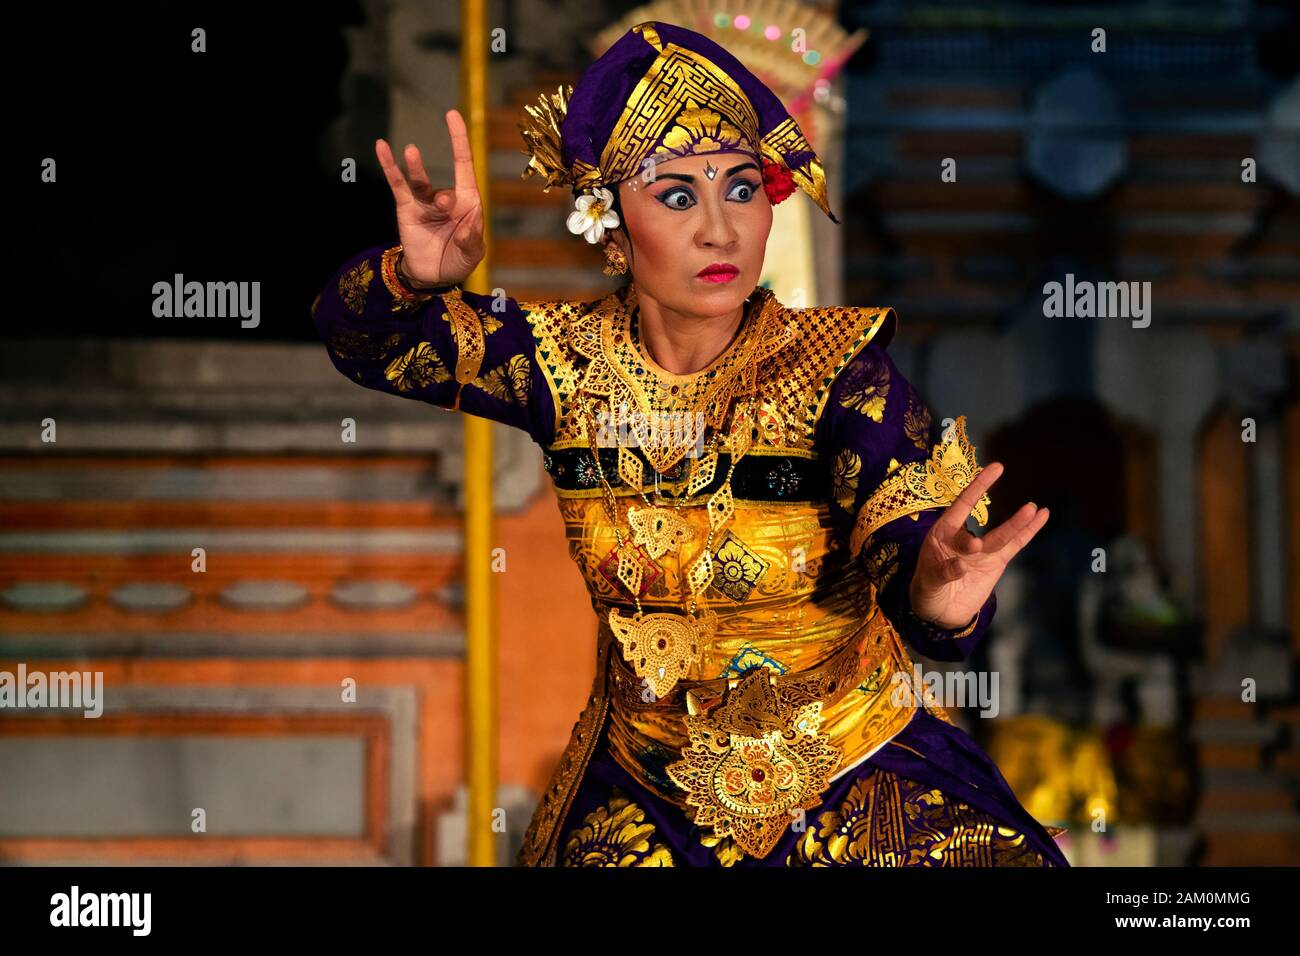 Danseuse balinaise qui interprète la danse Legong avec des costumes traditionnels au temple Pura Saraswati à Ubud, Bali, Indonésie. Banque D'Images